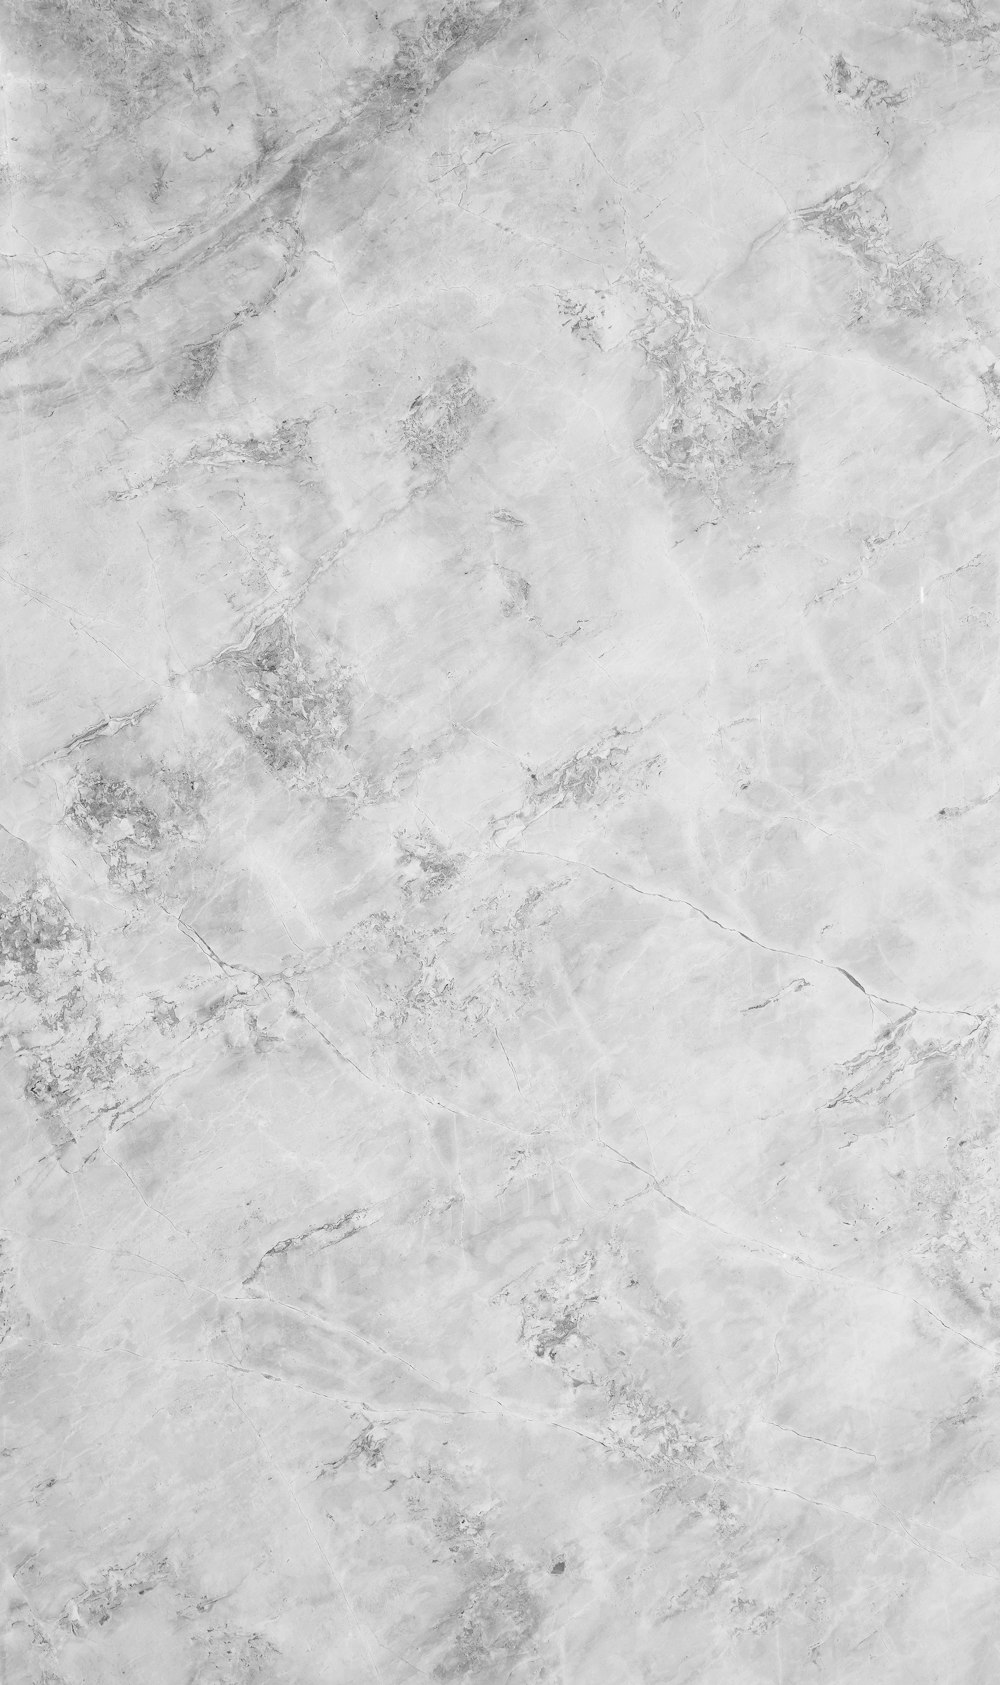 ein Schwarz-Weiß-Foto einer Marmoroberfläche